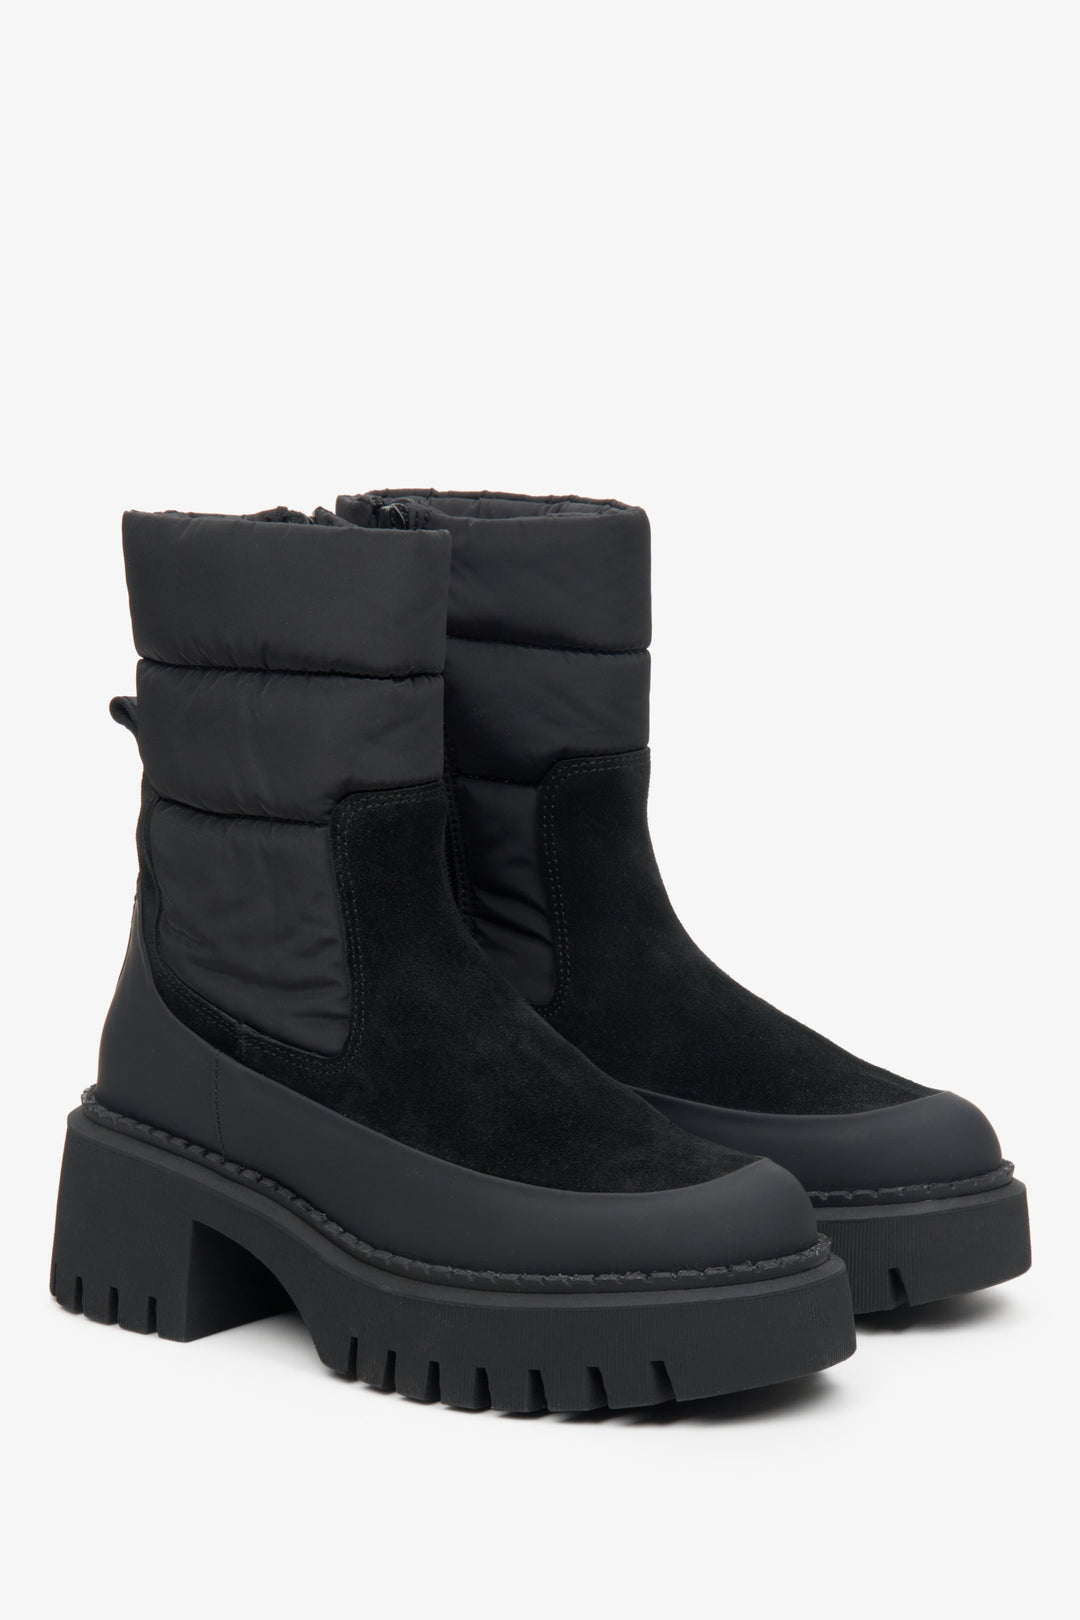 Wygodne, czarne botki damskie na zimę Estro - zbliżenie na przyszwę boczną i czubek buta.